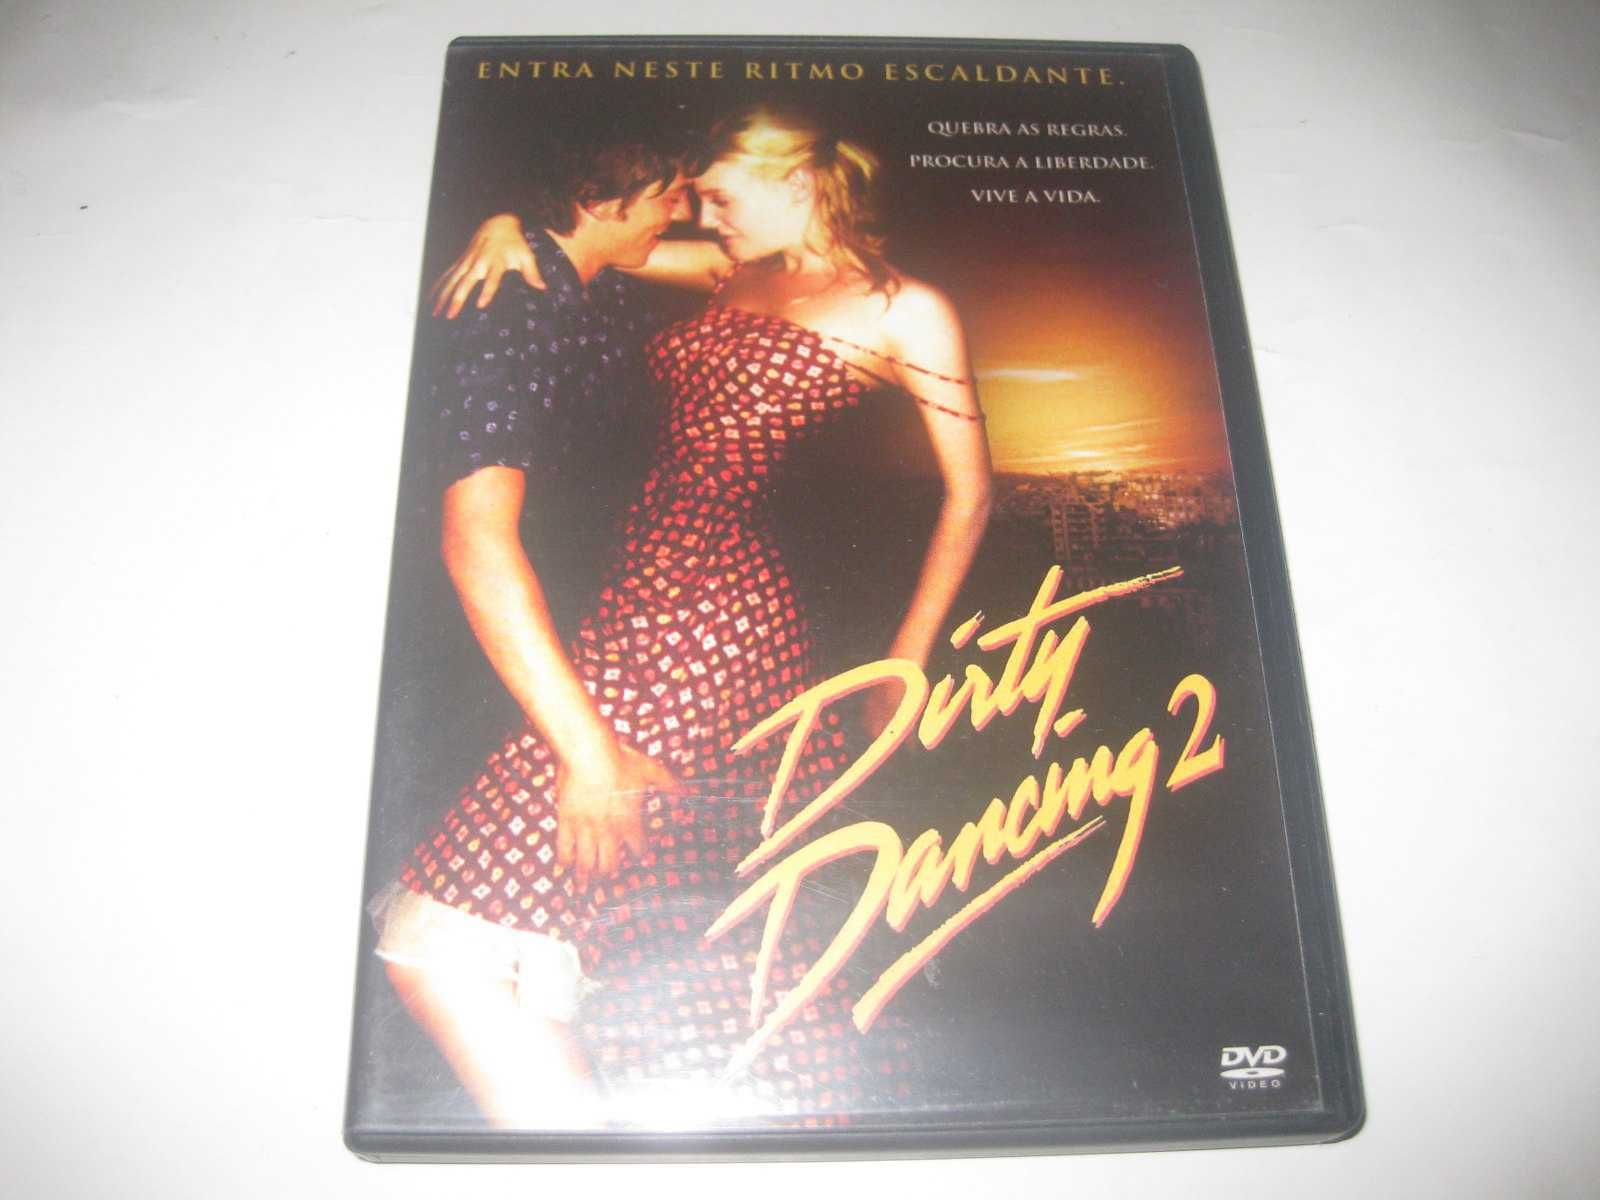 DVD "Dirty Dancing 2 - Noites de Havana" de Guy Ferland